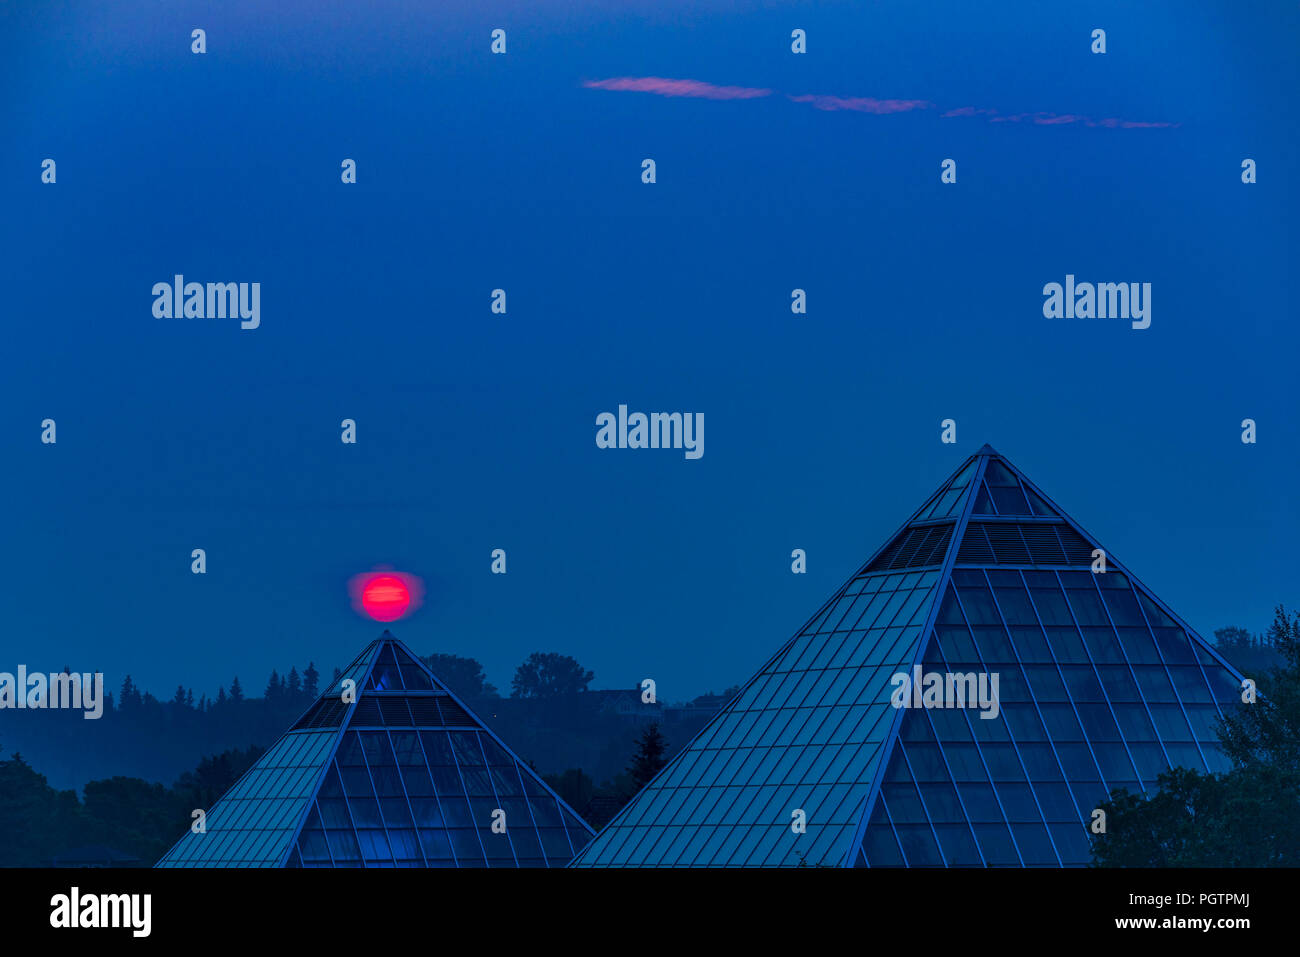 Soleil se lève à travers la fumée rempli ciel, Muttart Conservatory Pyramids, Edmonton, Alberta, Canada. Banque D'Images